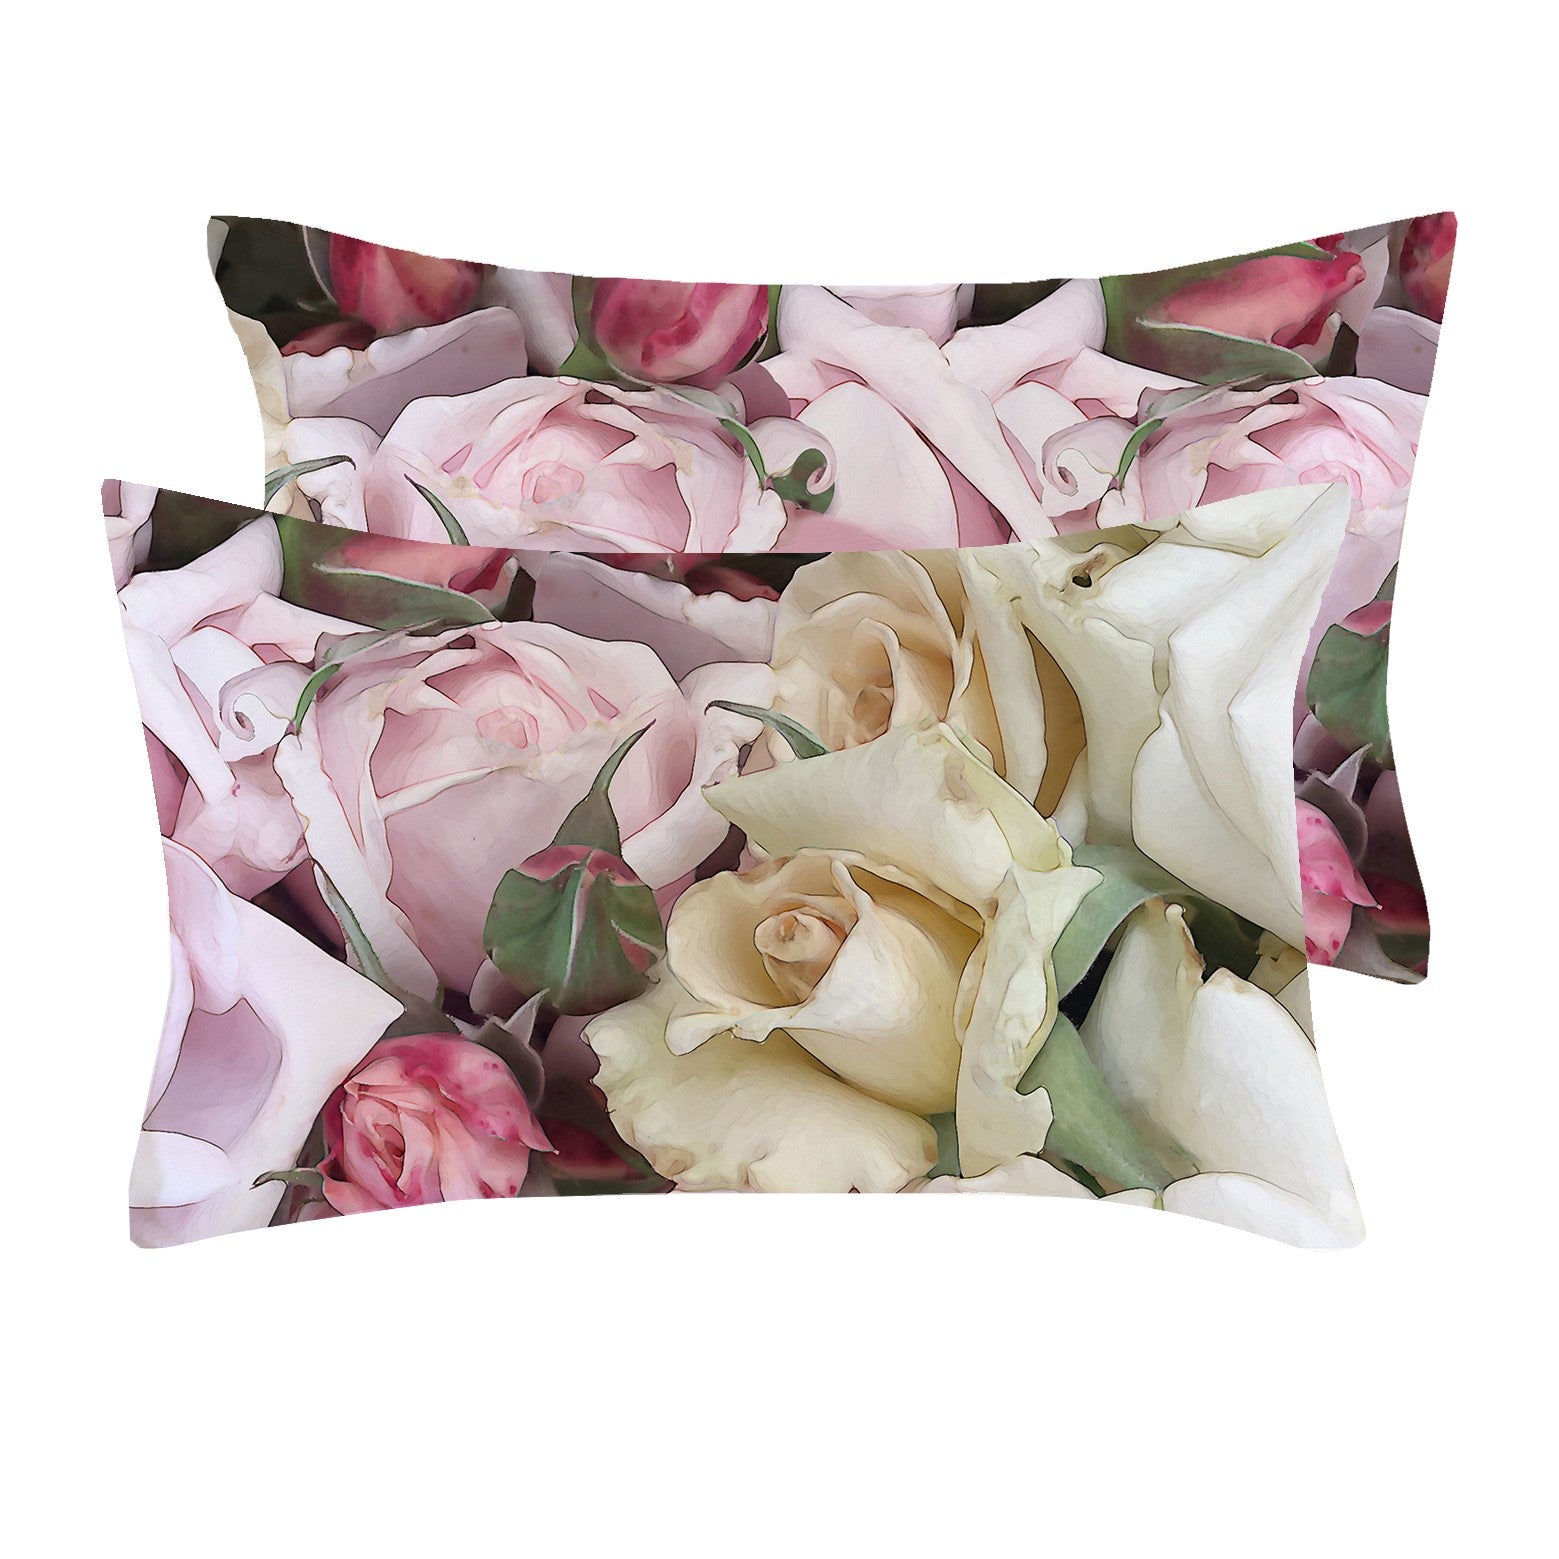 Satin Pillowcases in Rose in Cream